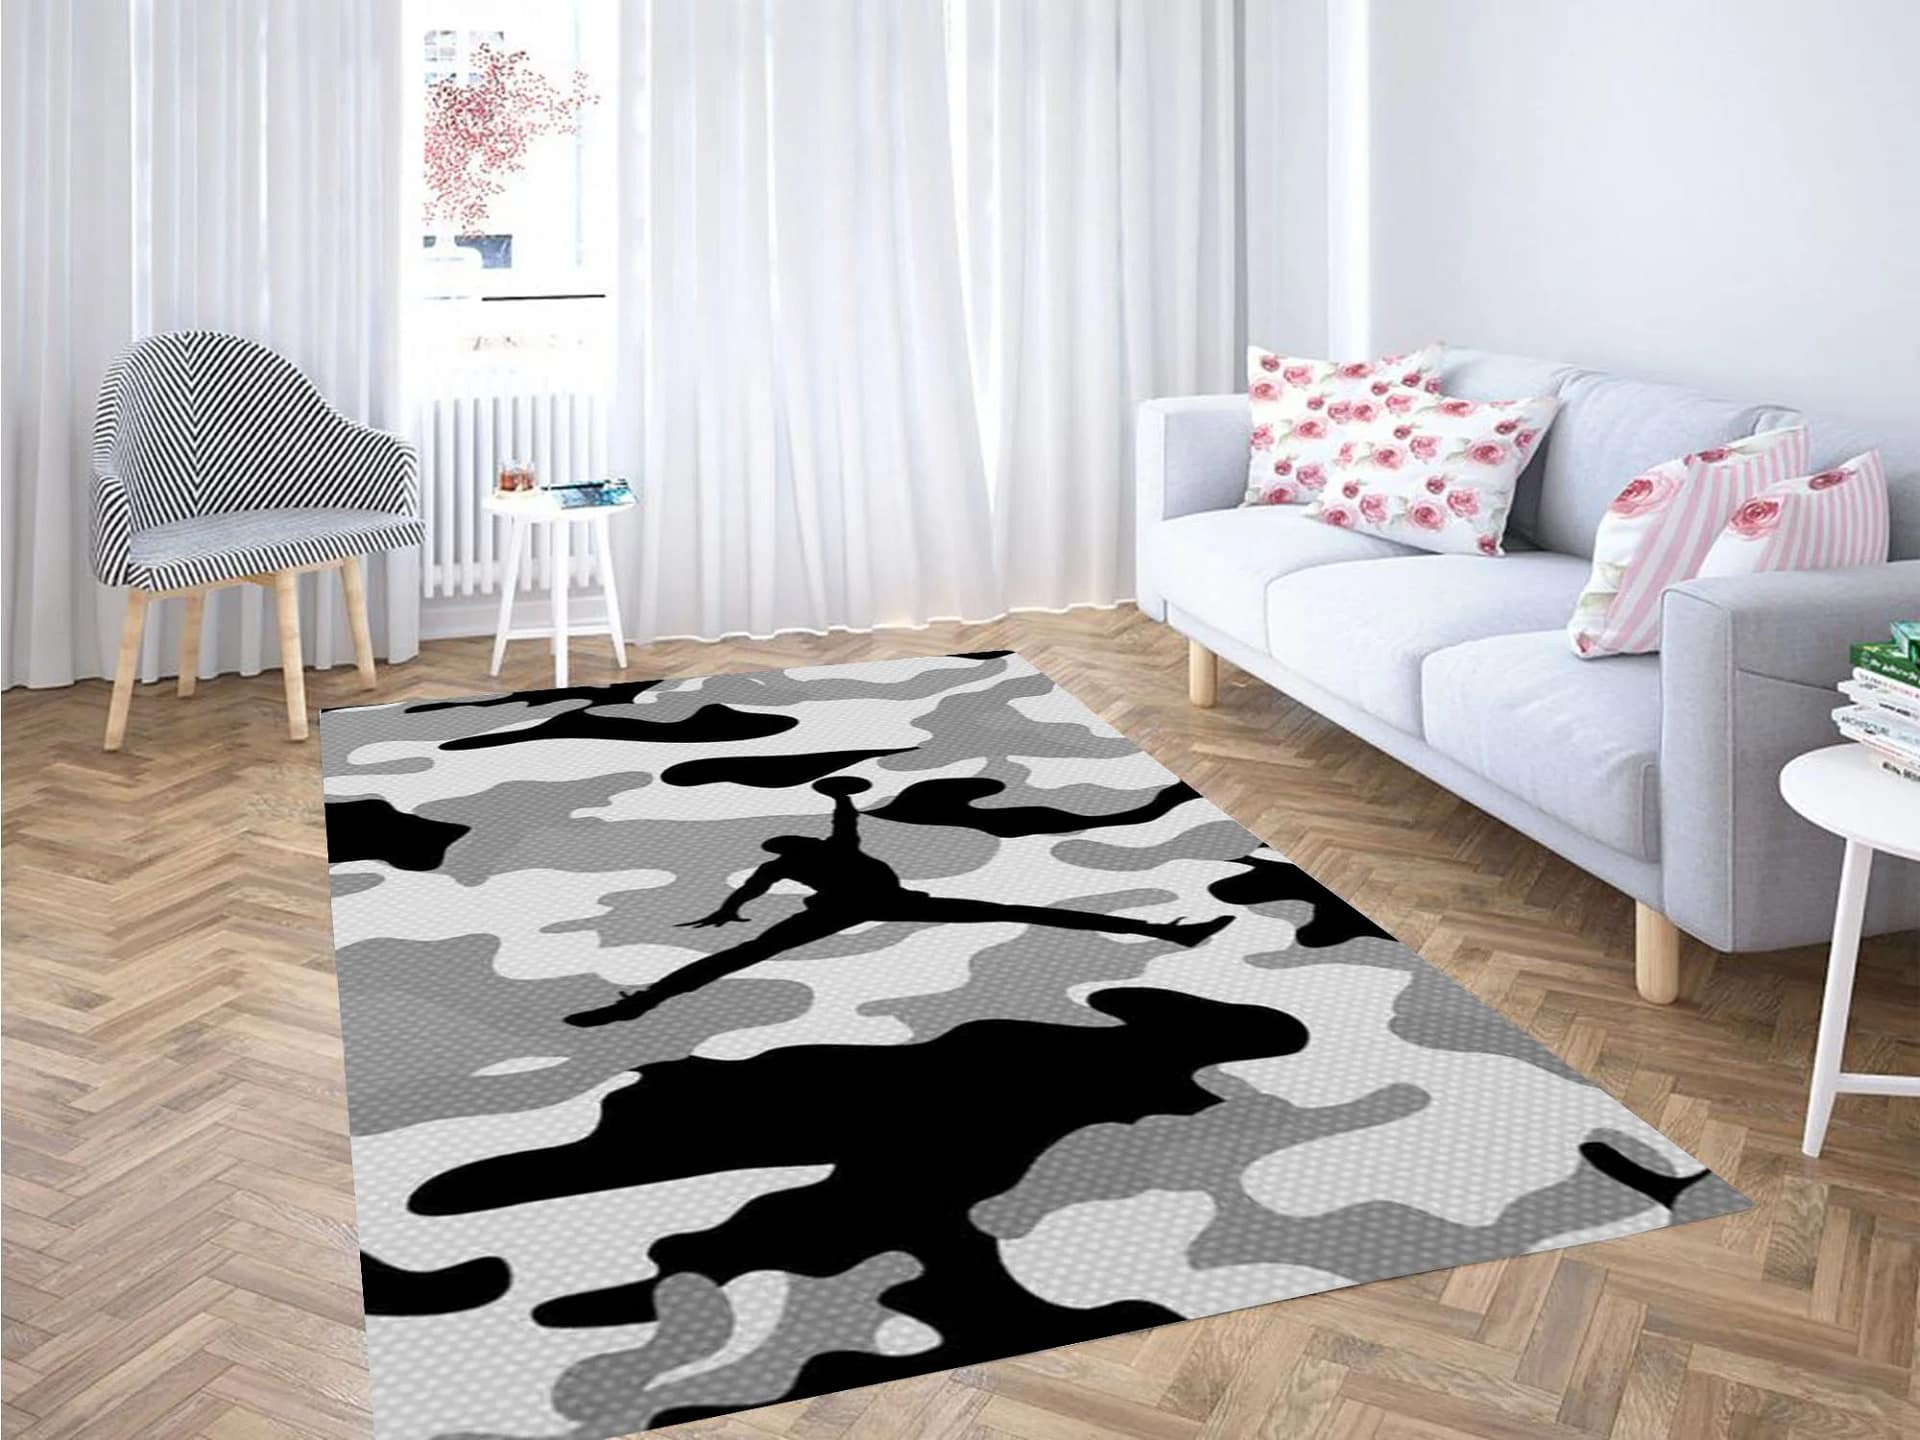 Jordan Army Wallpaper Carpet Rug